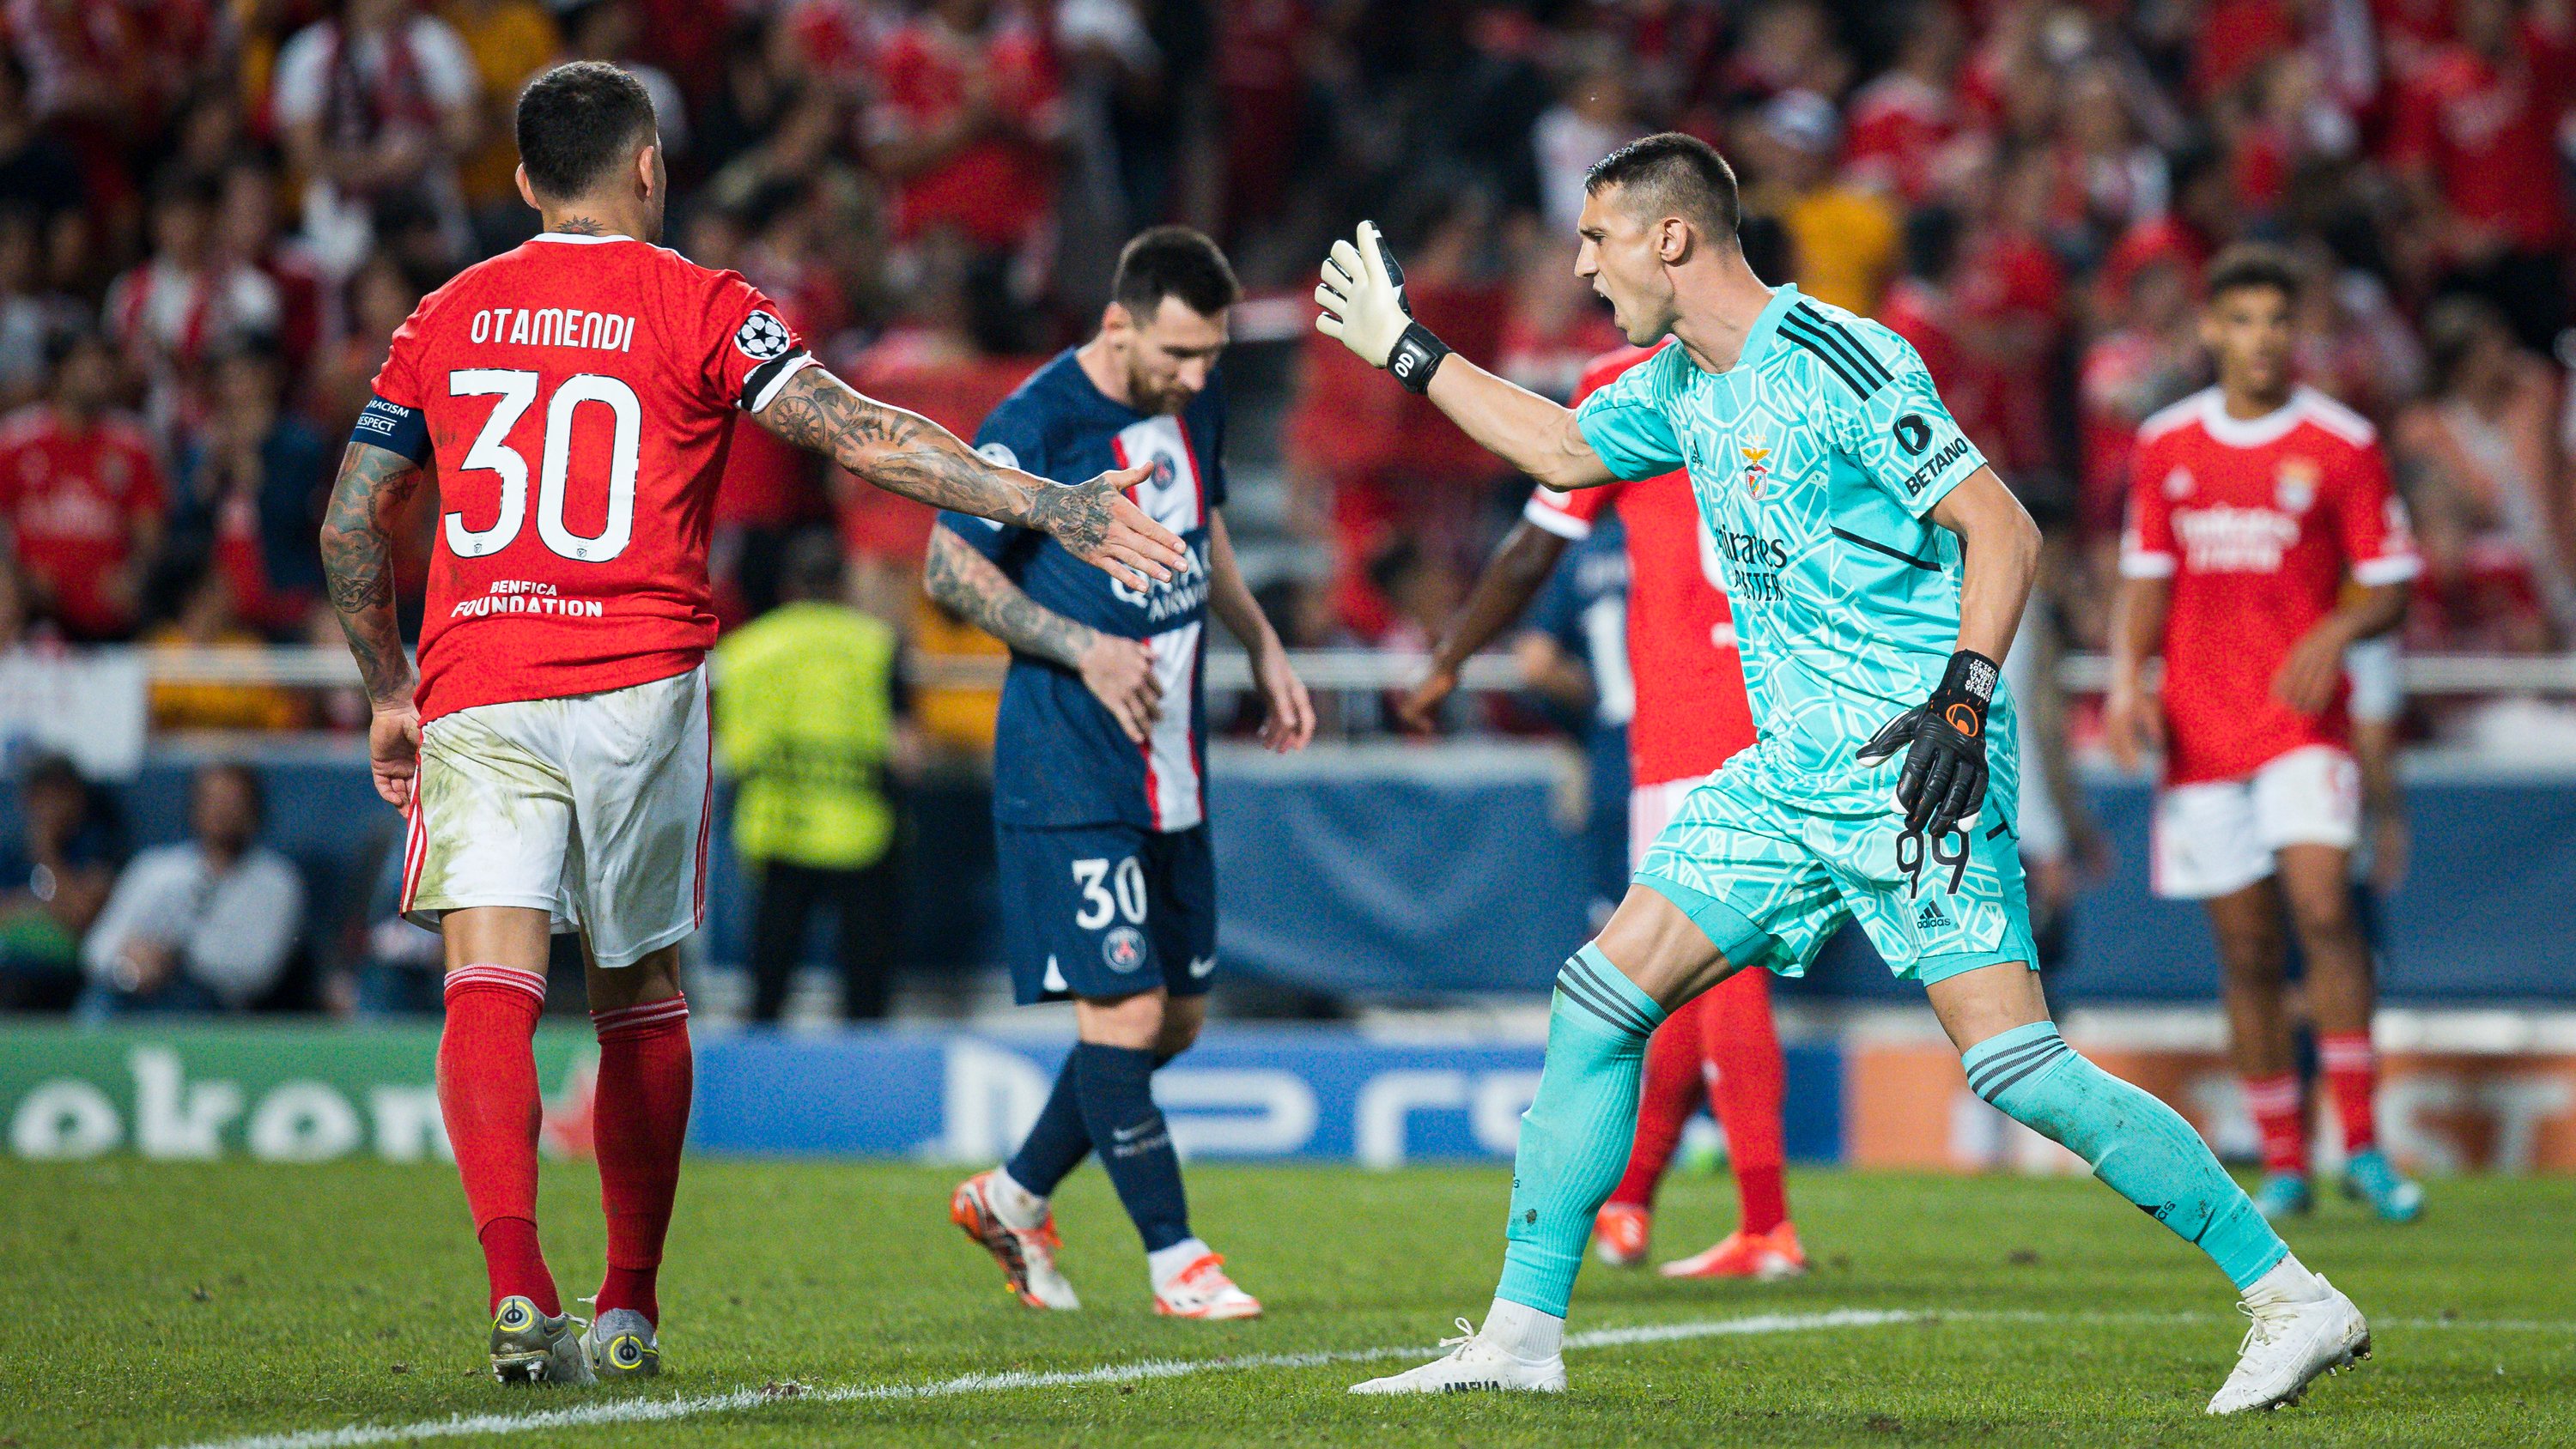 Vlachodimos esteve gigante na baliza na segunda parte e PSG não foi além de um empate frente a um Benfica que soube resistir depois de uma grande primeira parte